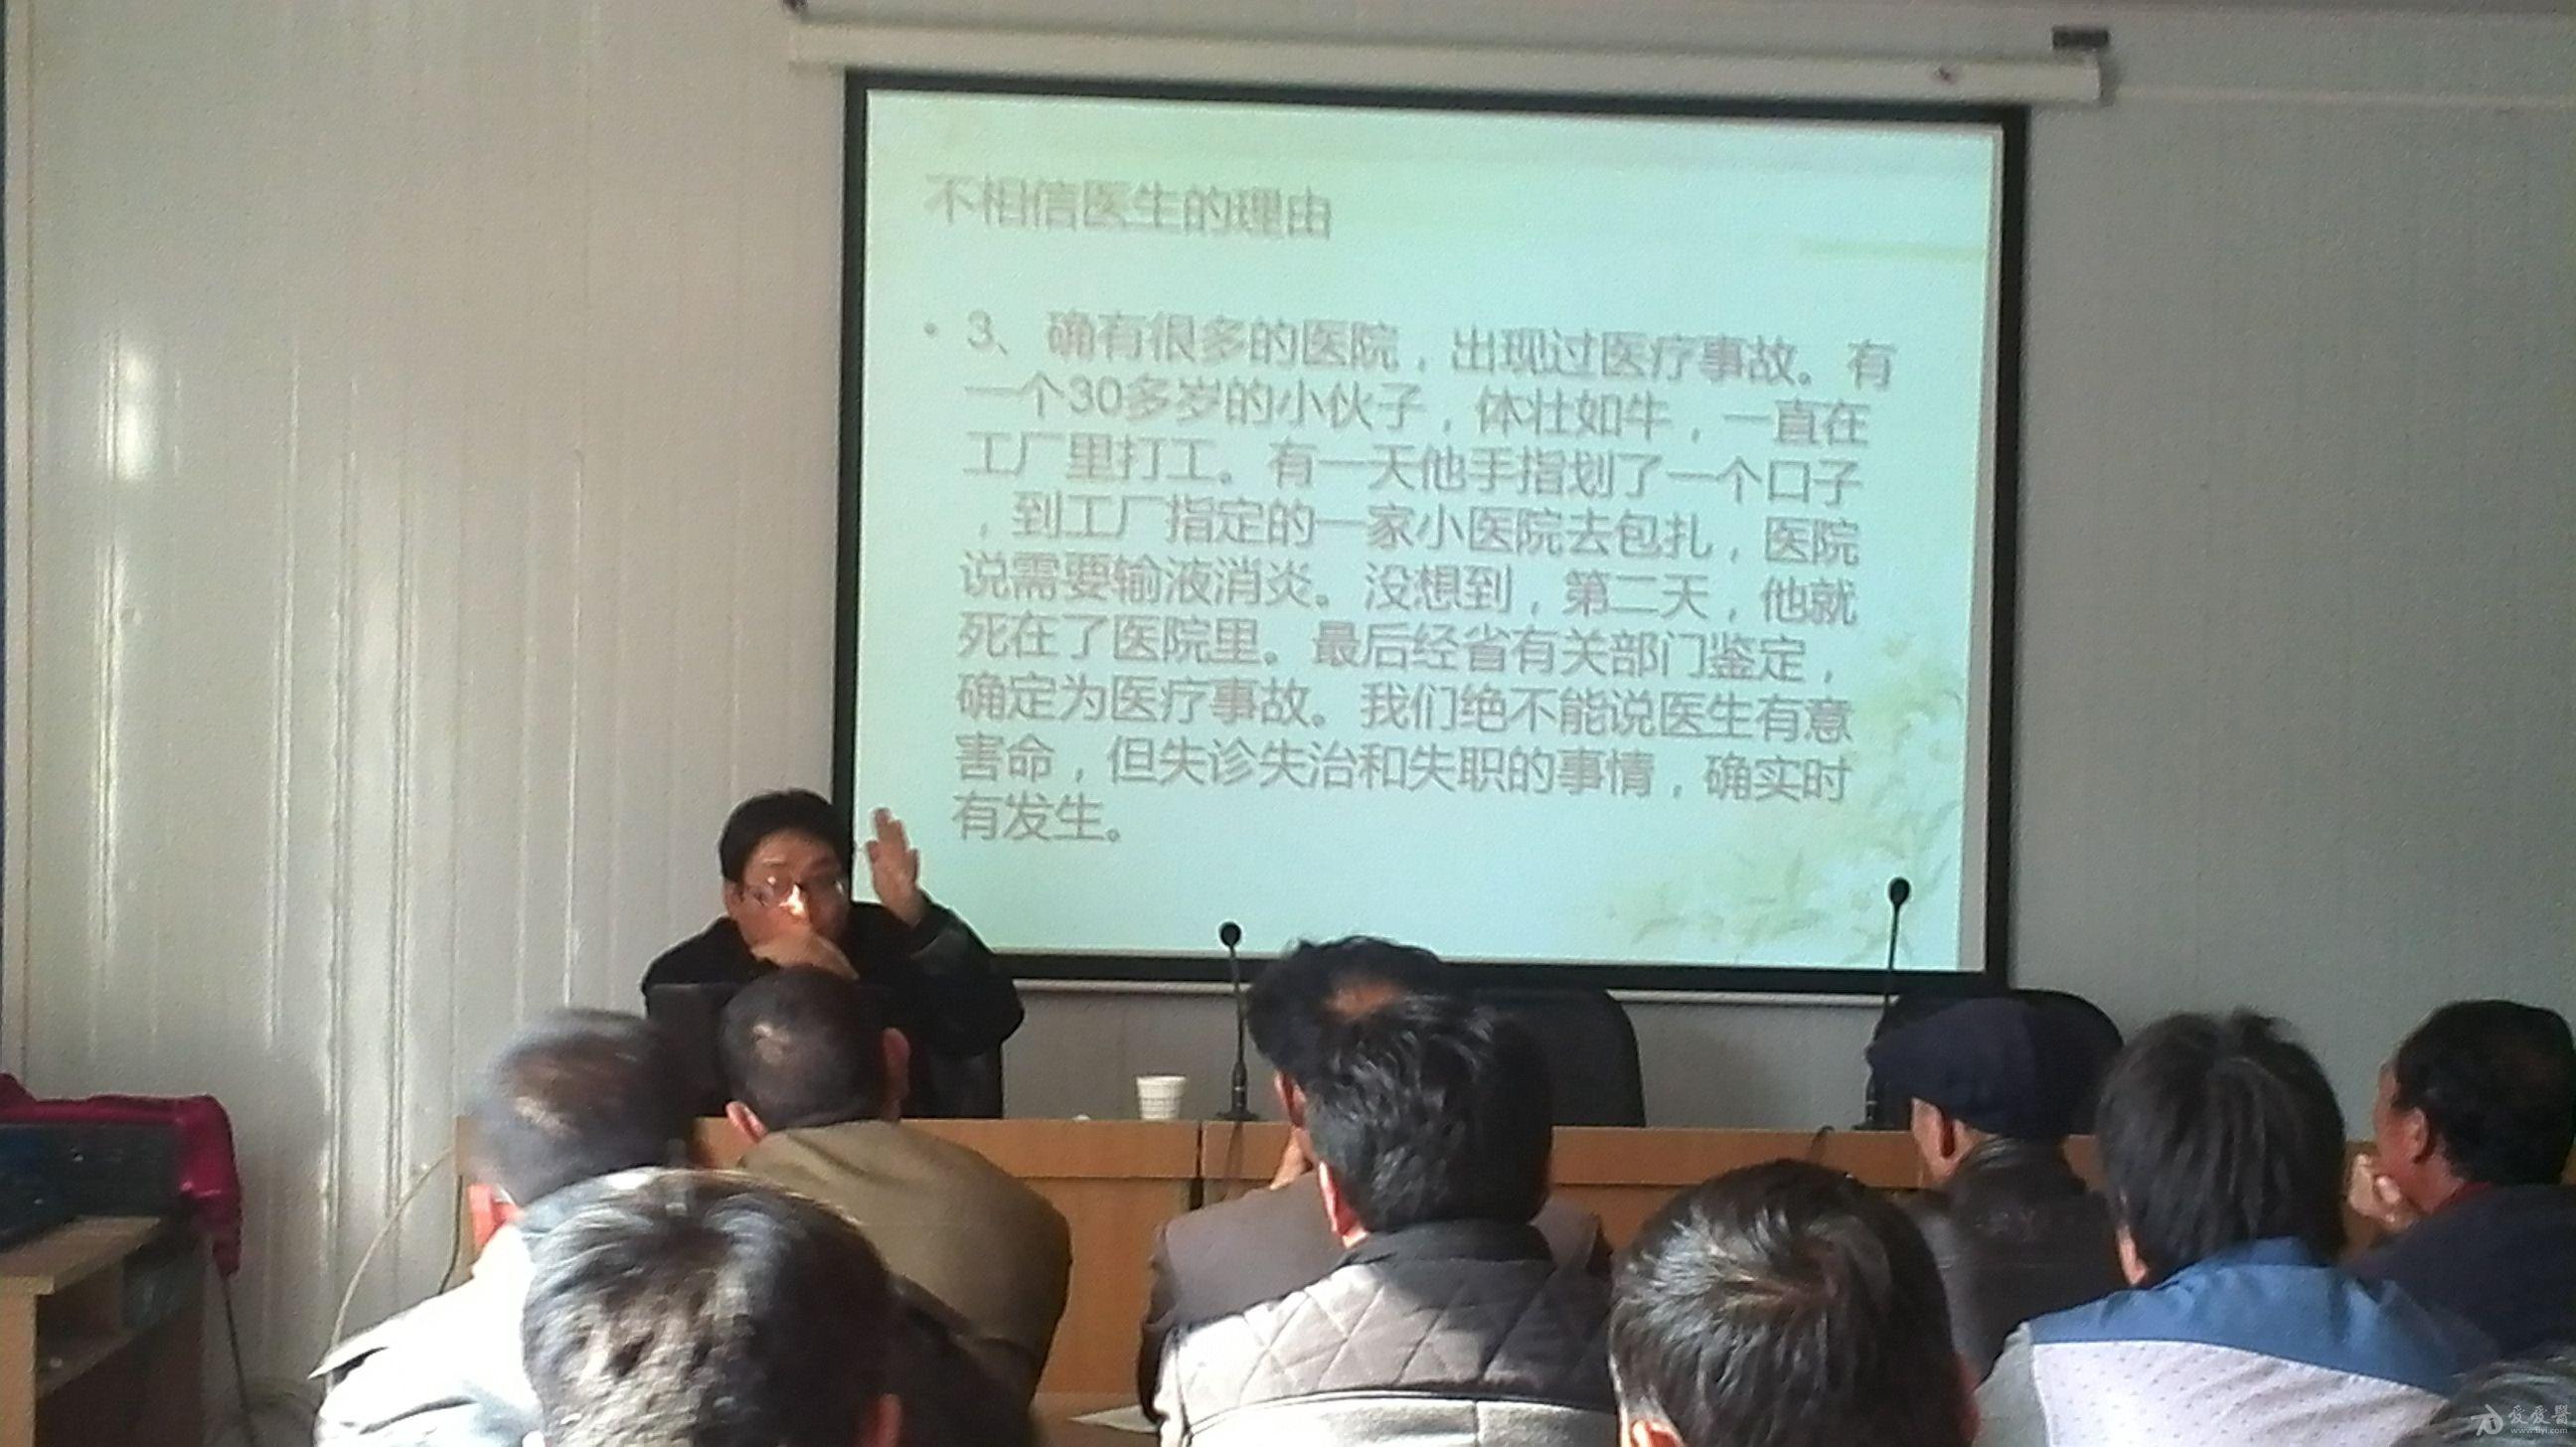 庄浪县永宁乡卫生院举办"科学践行群众路线活动"讲座图片